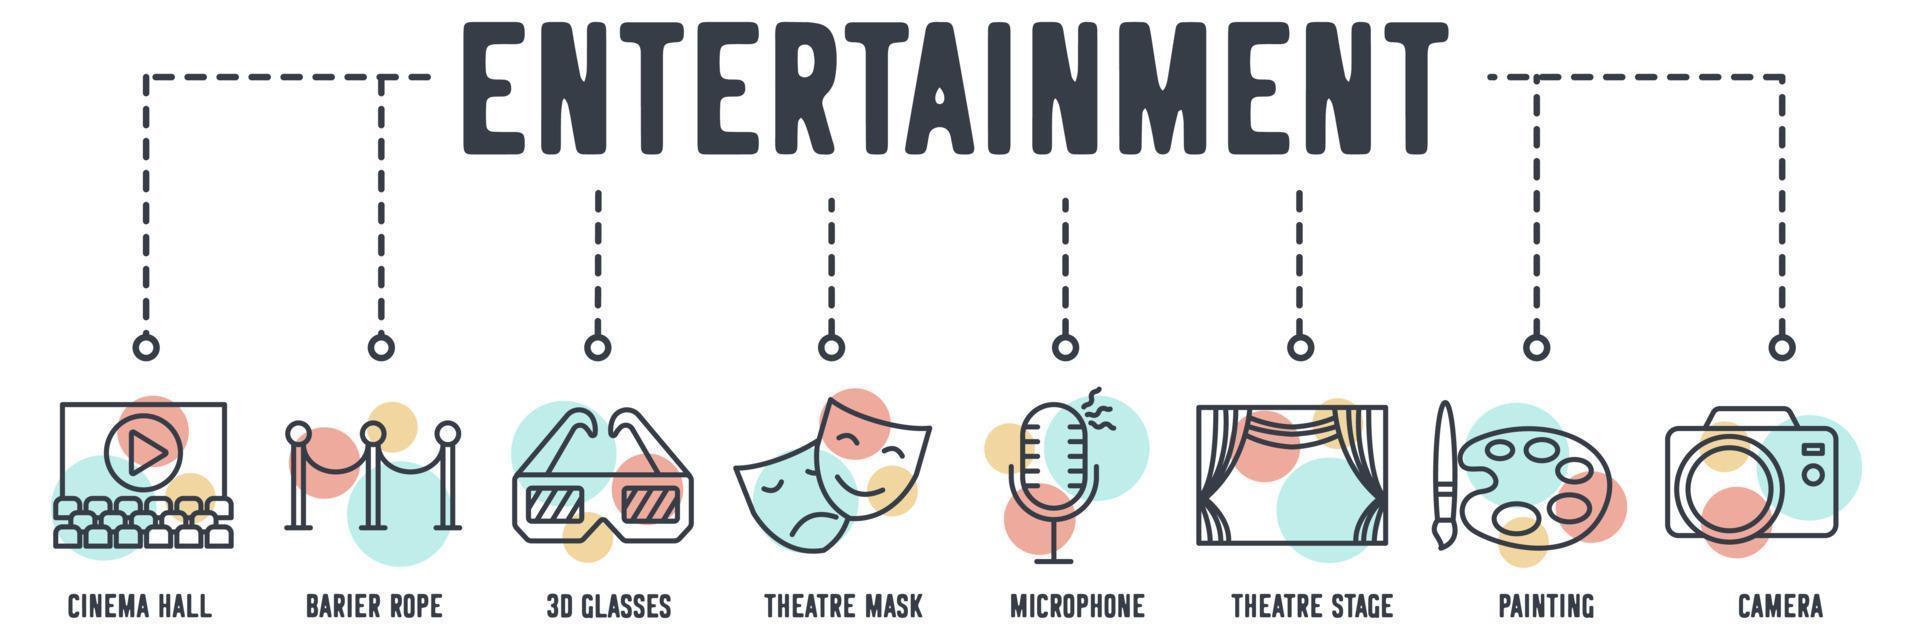 icona di web banner di intrattenimento cinematografico. sala cinematografica, corda barriera, occhiali 3d, maschera teatrale, microfono, palcoscenico teatrale, pittura, concetto di illustrazione vettoriale della fotocamera.